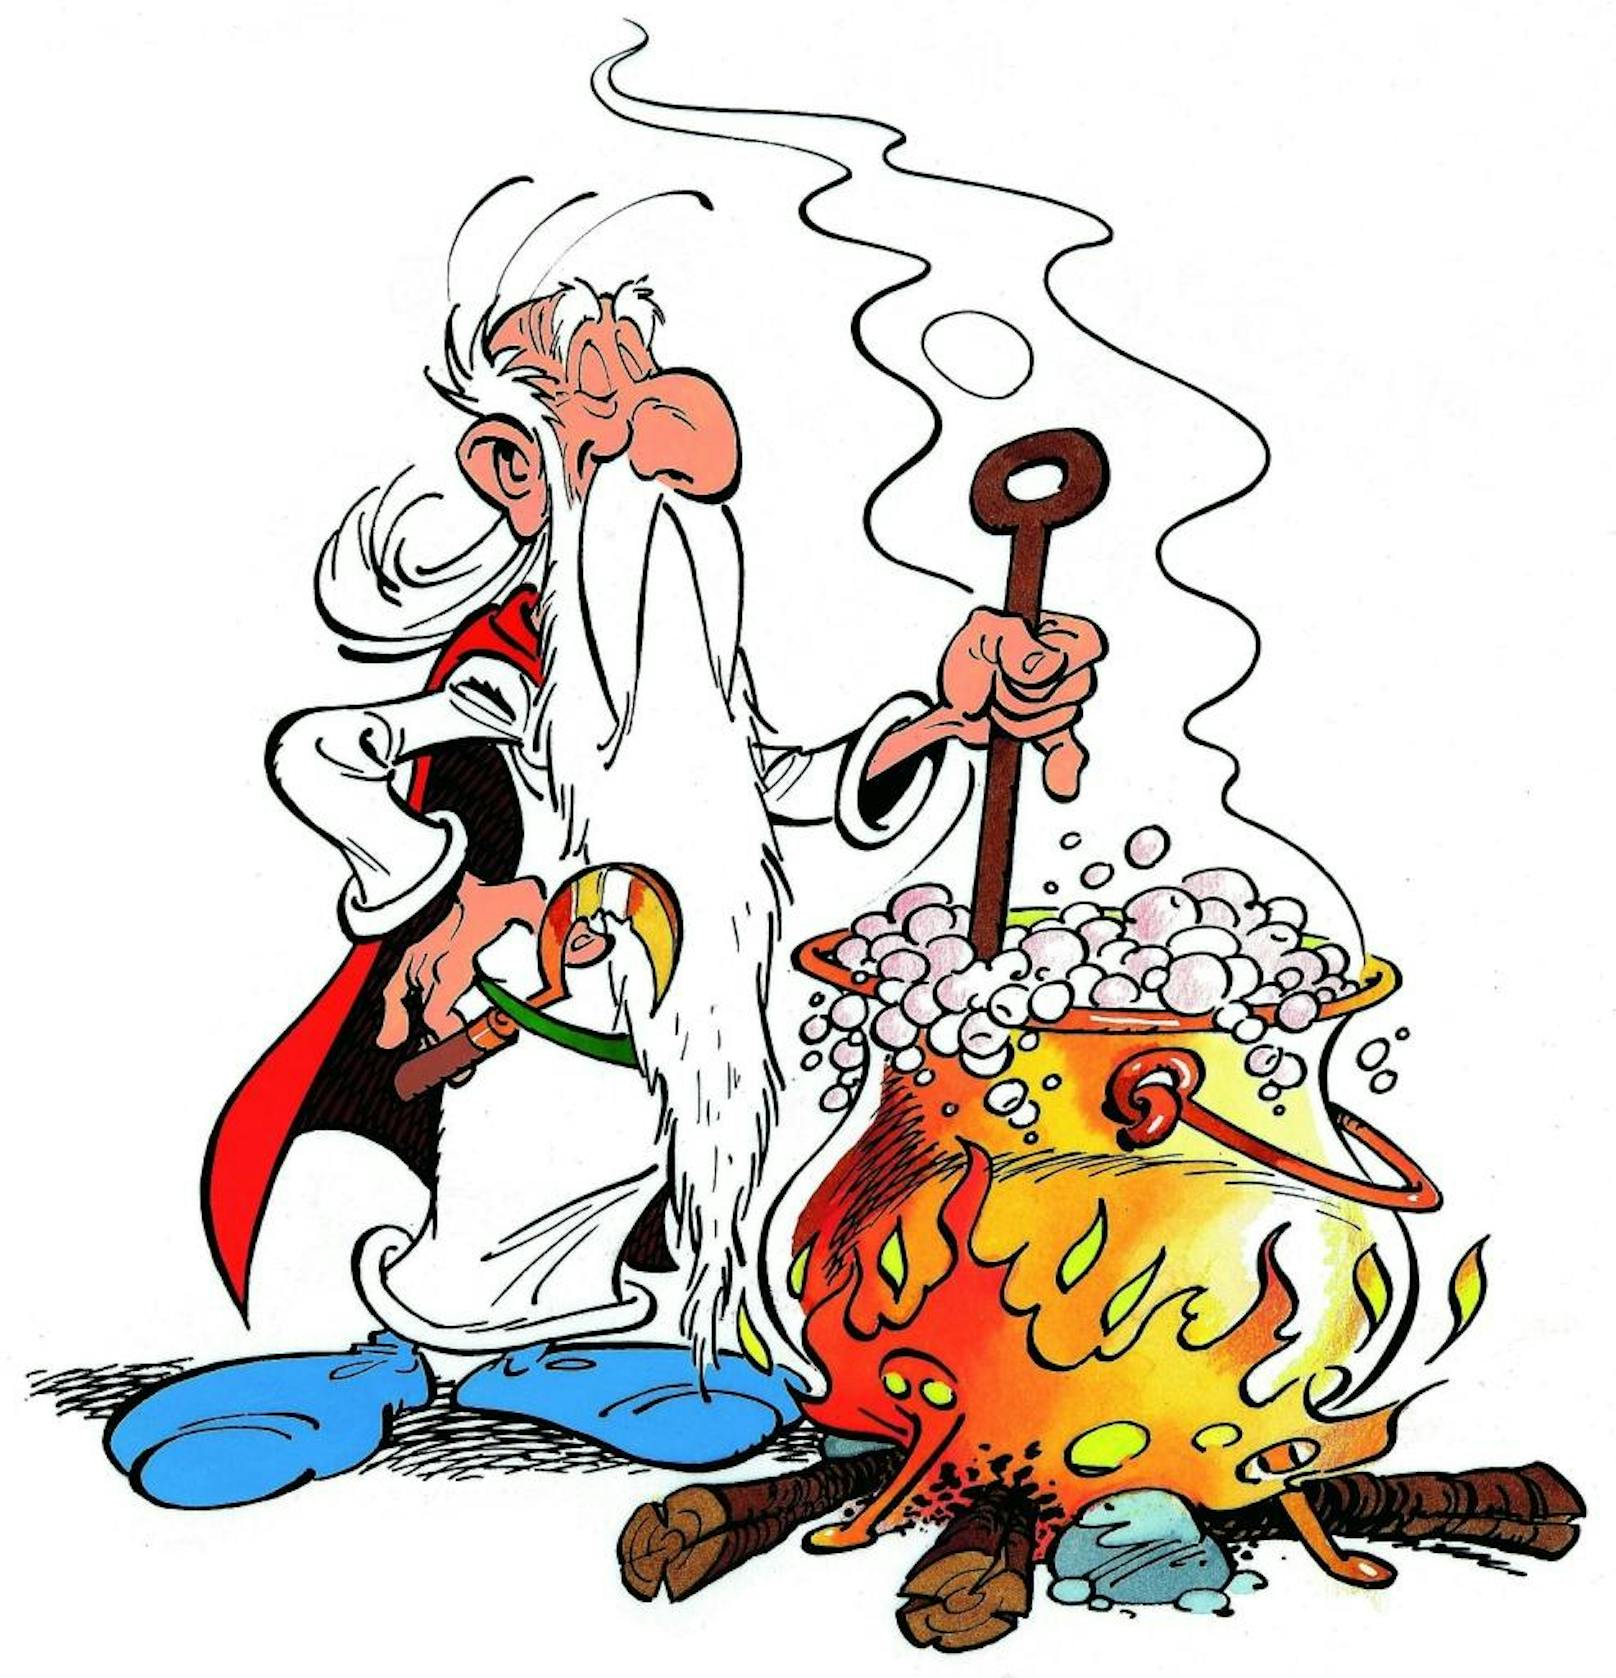 Texter René Goscinny wird am 14.8.1926 in Paris geboren. Bis zu seinem frühen Tod am 5.11.1977 verfasst er 24 Asterix-Bände. Asterix ist bis heute der erfolgreichste Comic Frankreichs.